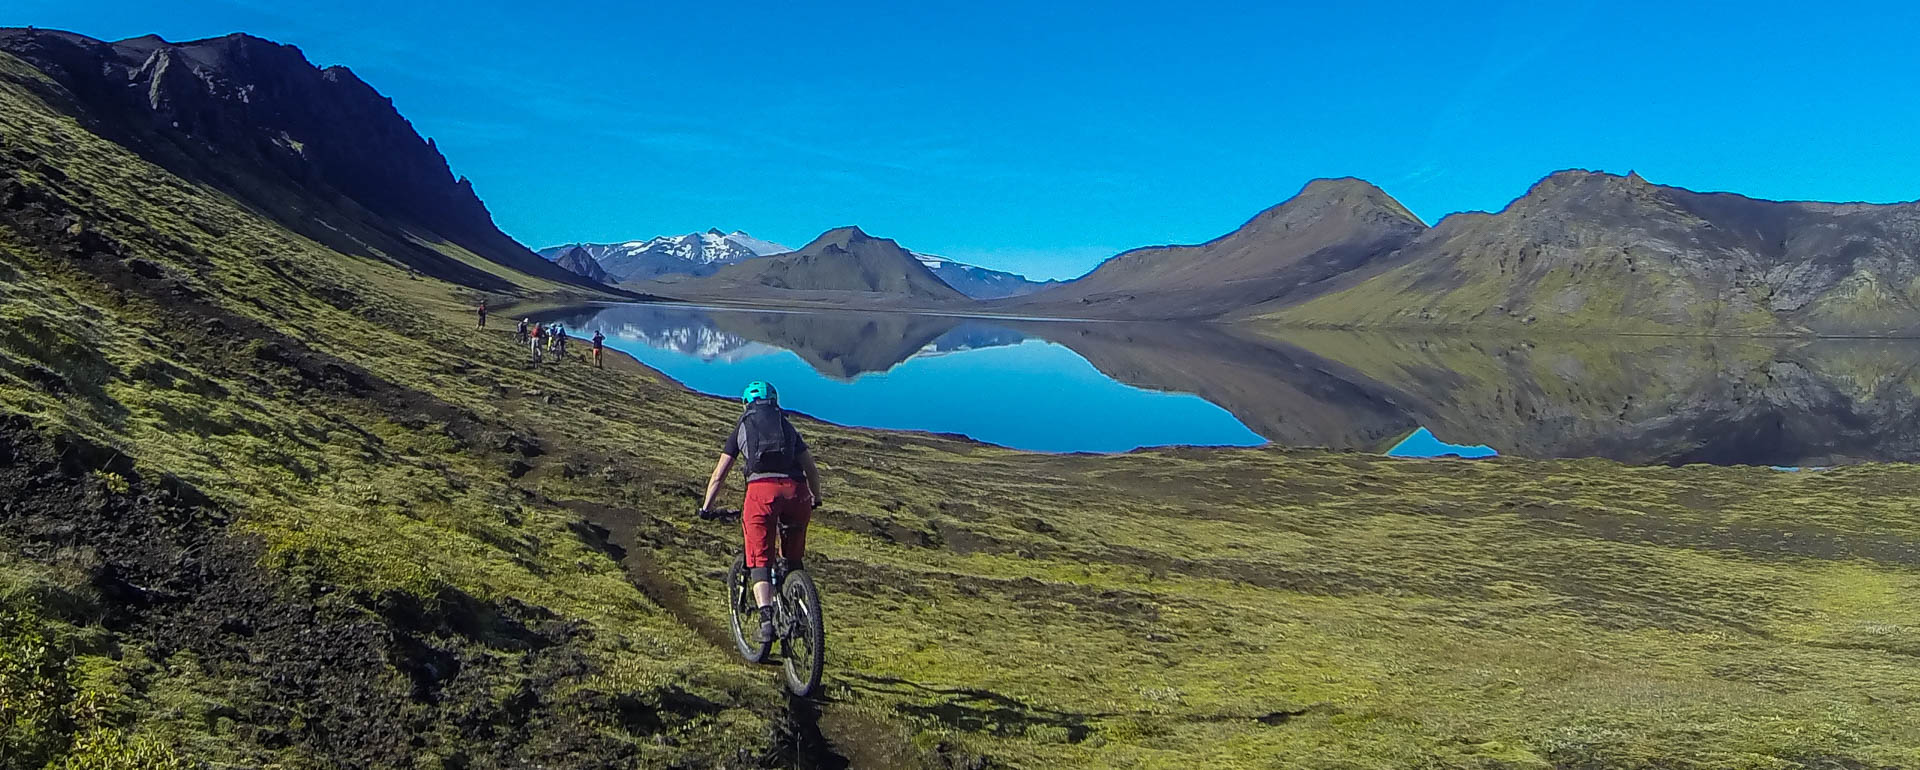 Biken im Hochland von Island